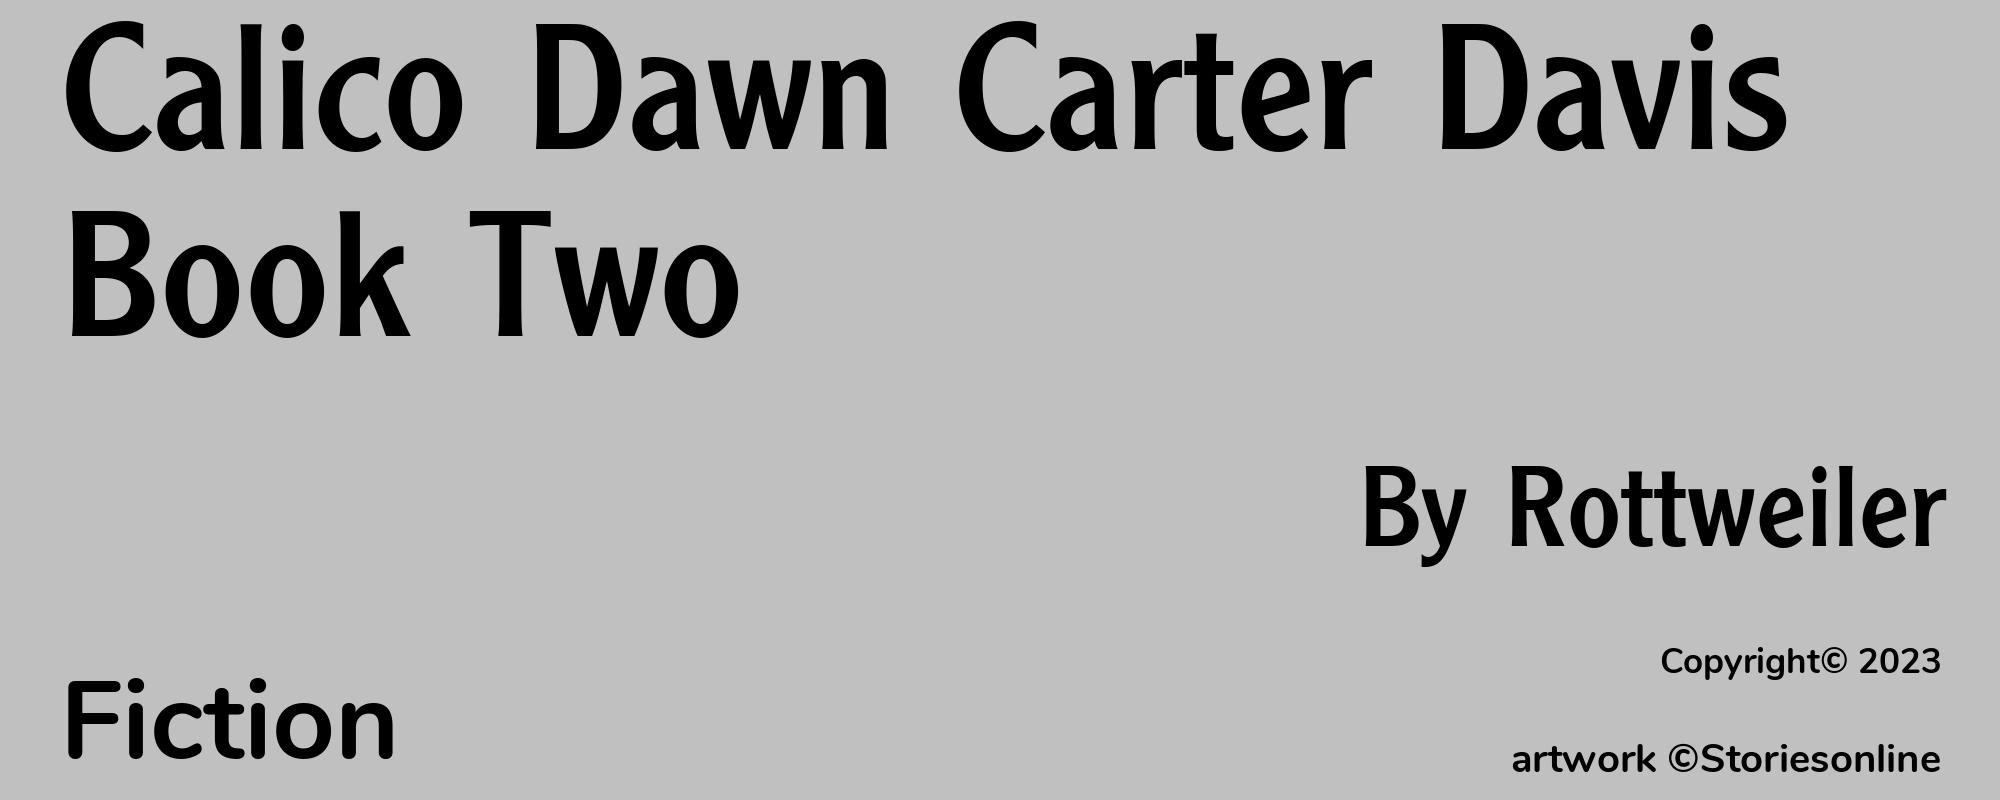 Calico Dawn Carter Davis Book Two - Cover